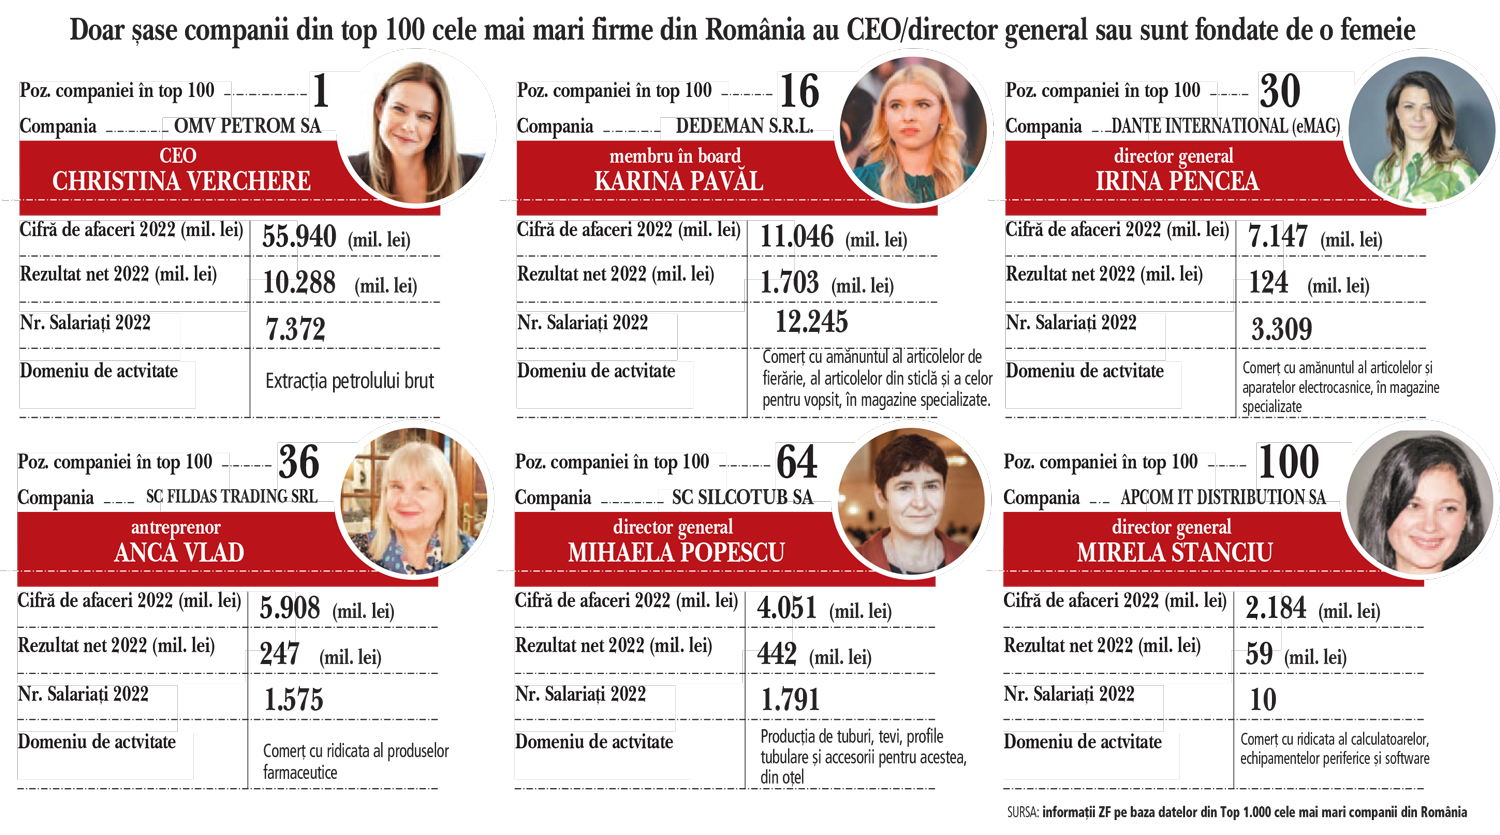 Doar şase femei conduc o companie din top 100 cele mai mari din România. Cele şase companii au o cifră de afaceri cumulată de 17 mld. euro şi 26.000 de angajaţi. „Marile companii au încă o mentalitate conservatoare bazată pe stereotipuri sociale“